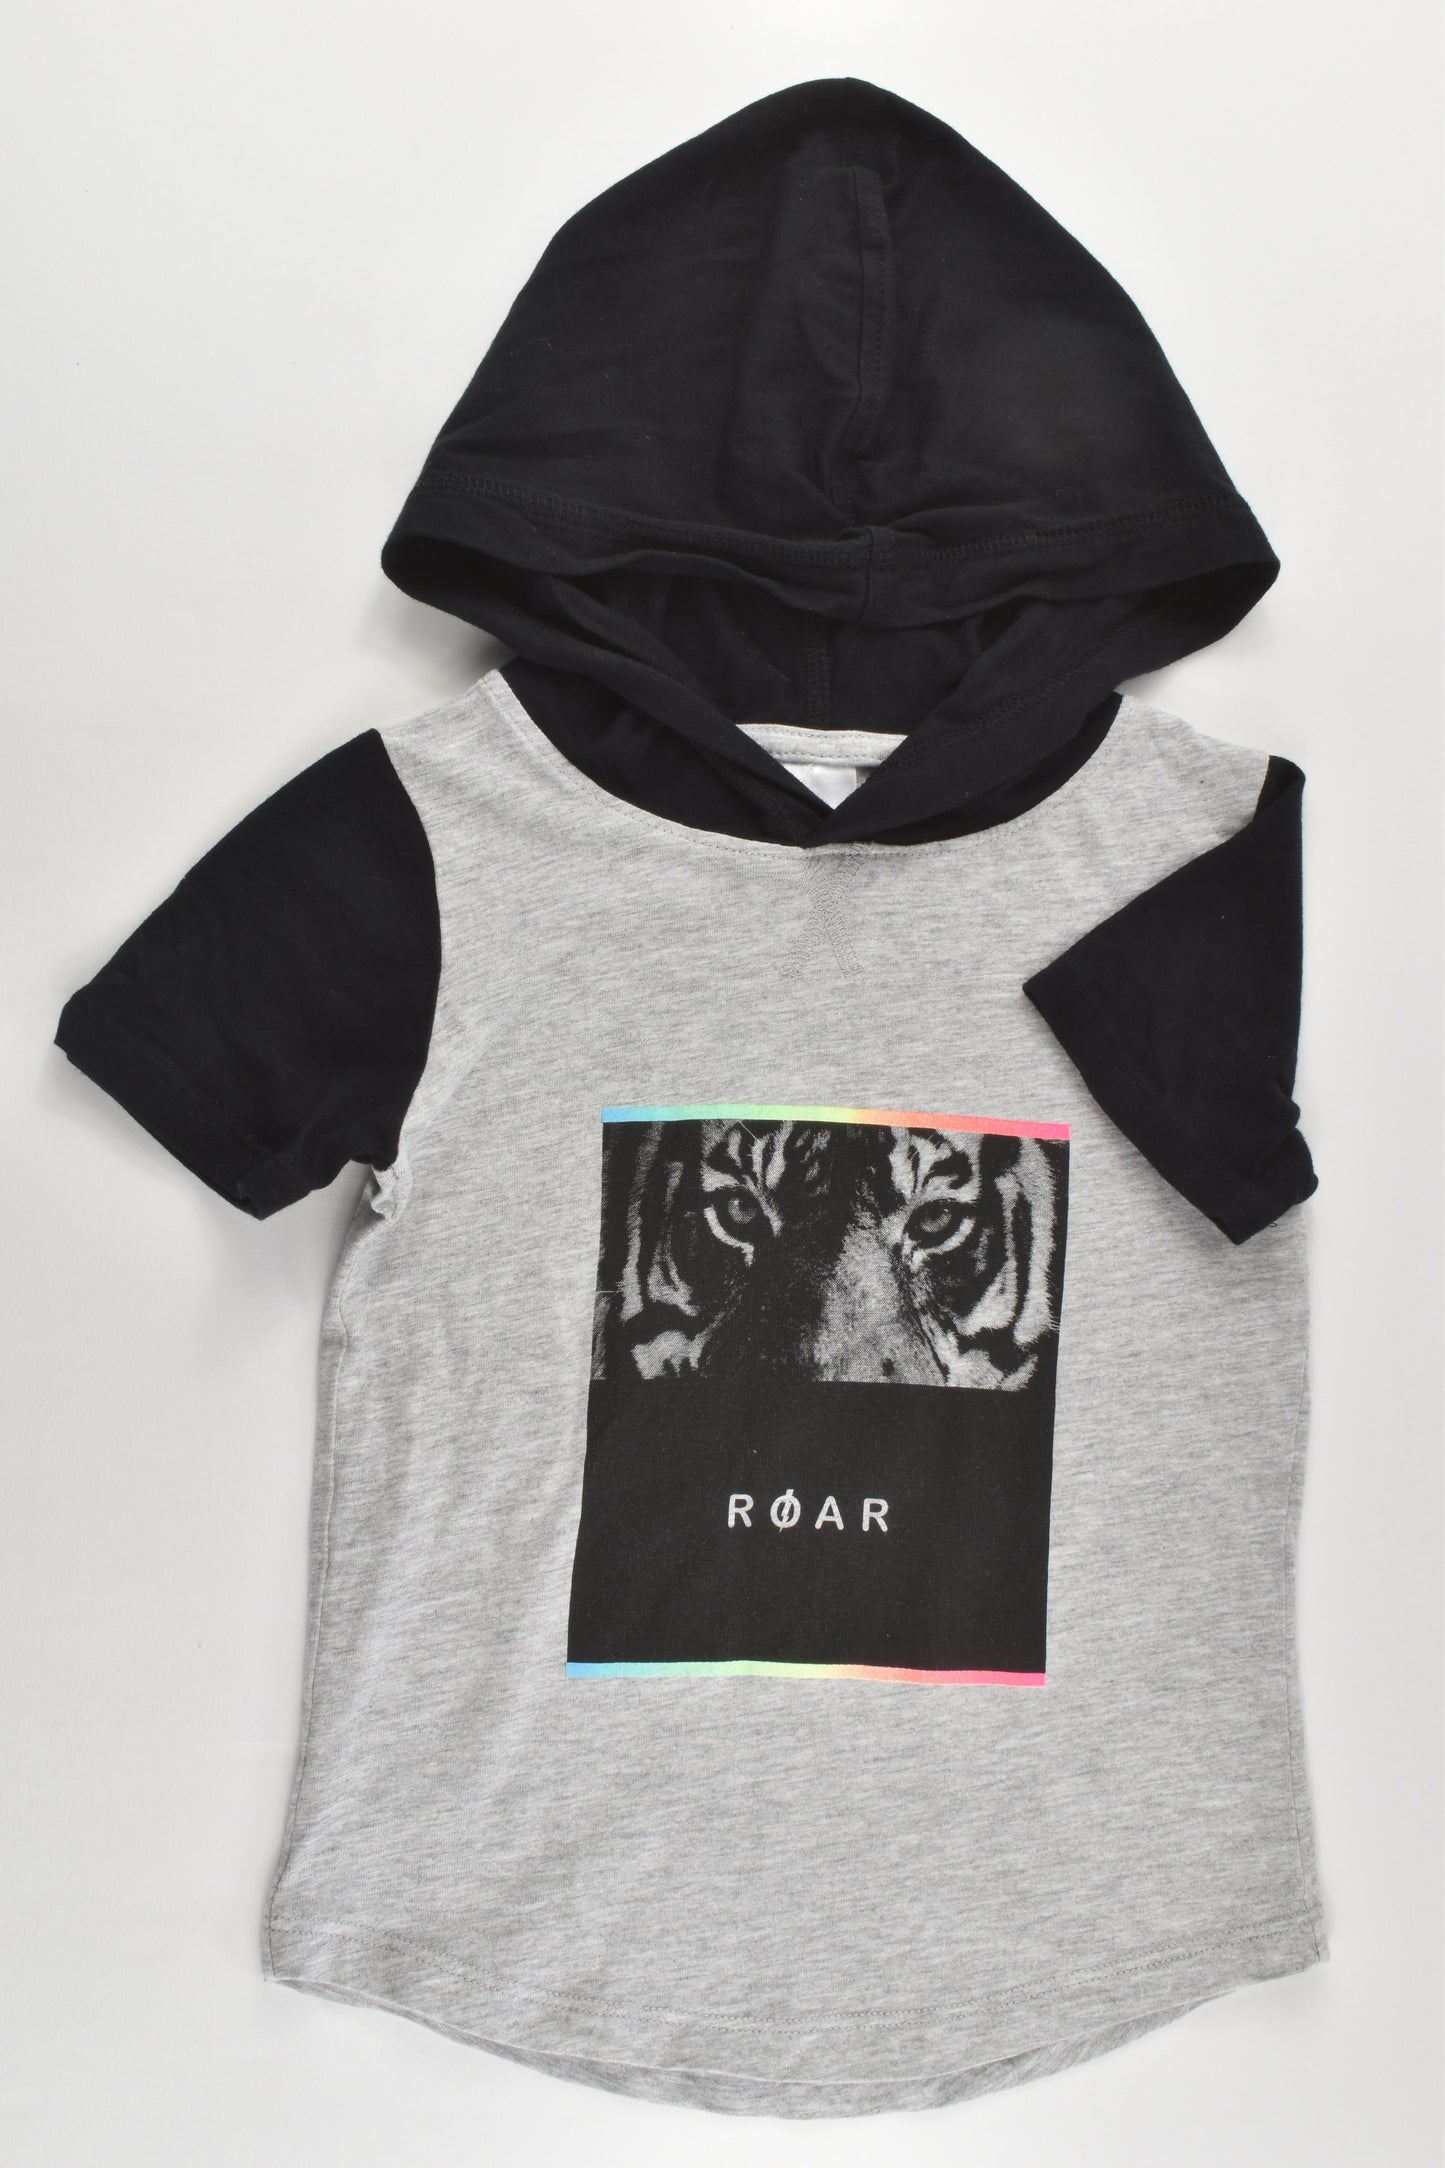 Target Size 3 'Roar' Hooded T-shirt